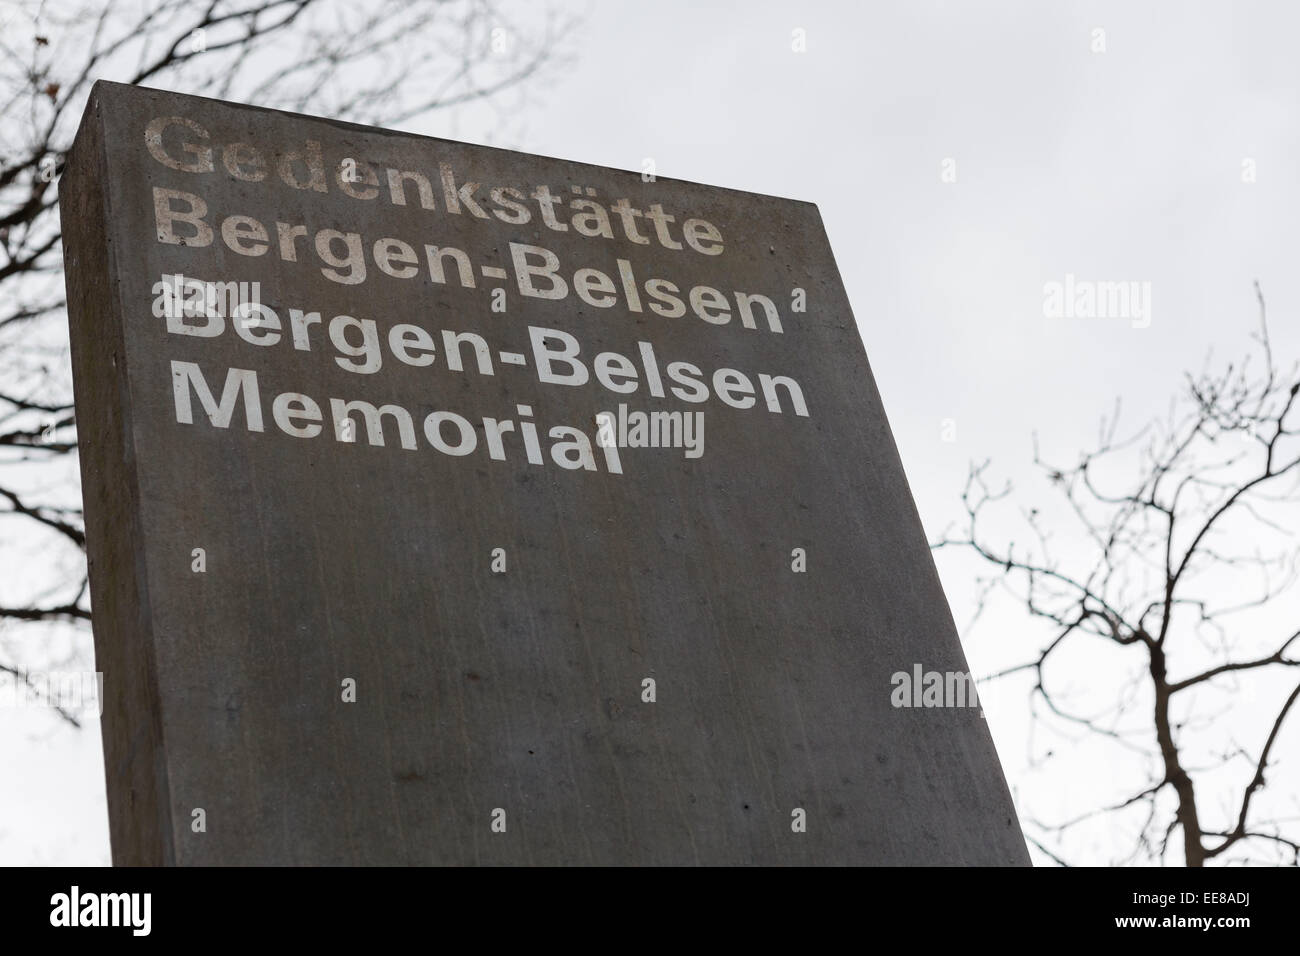 Sign at the site of Bergen-Belsen Concentration and Prisoner of War POW Camp, Bergen-Belsen, Germany Stock Photo